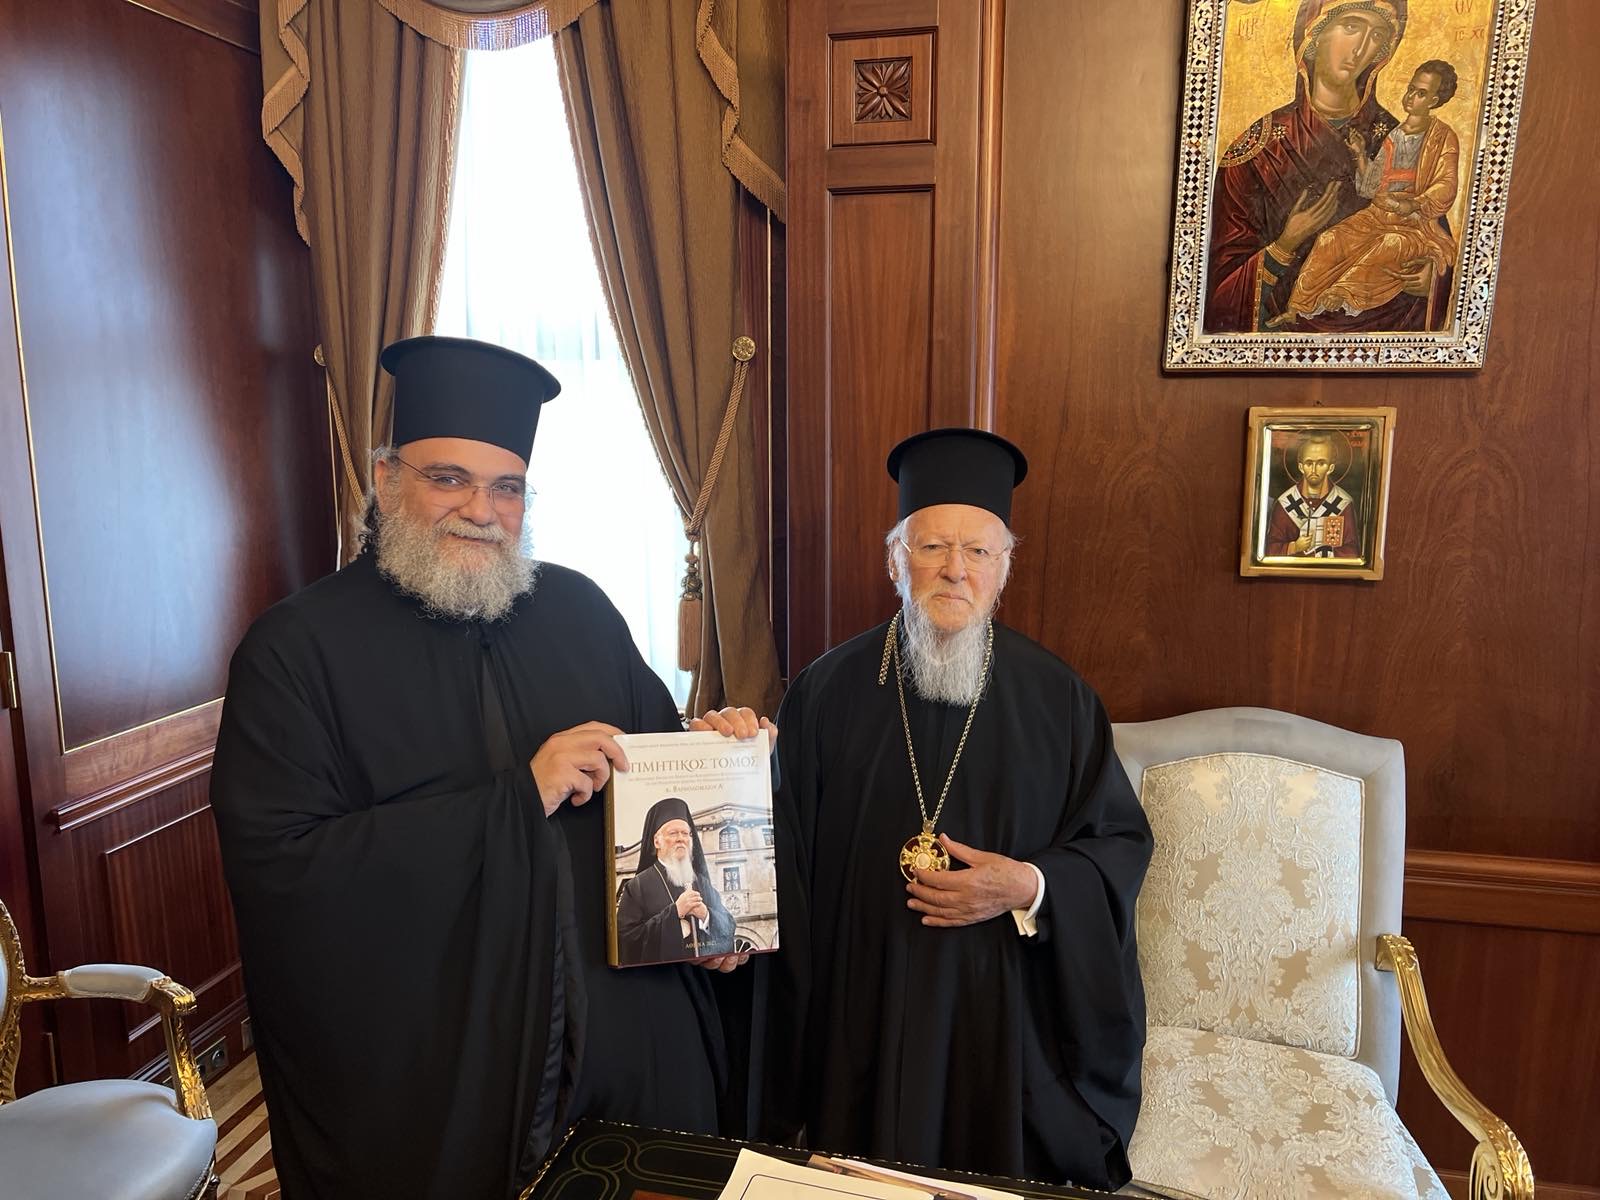 Επίσκεψη του Ταμασού και Ορεινής Ησαΐα στο Πατριαρχείο Κωνσταντινουπόλεως